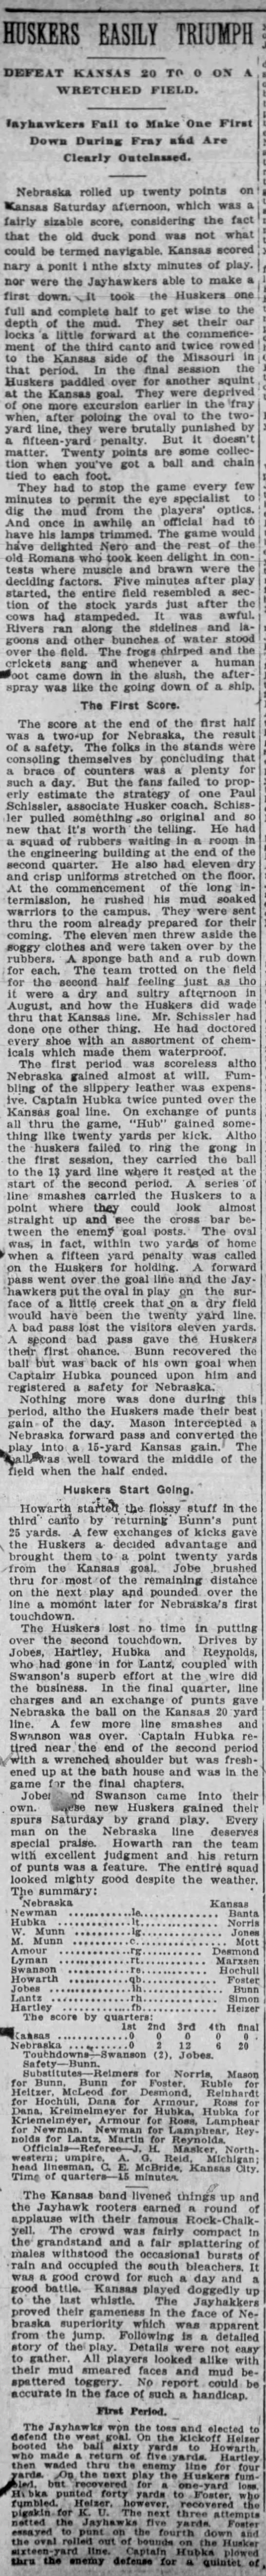 1918 Nebraska-Kansas football Lincoln Journal 1 - 